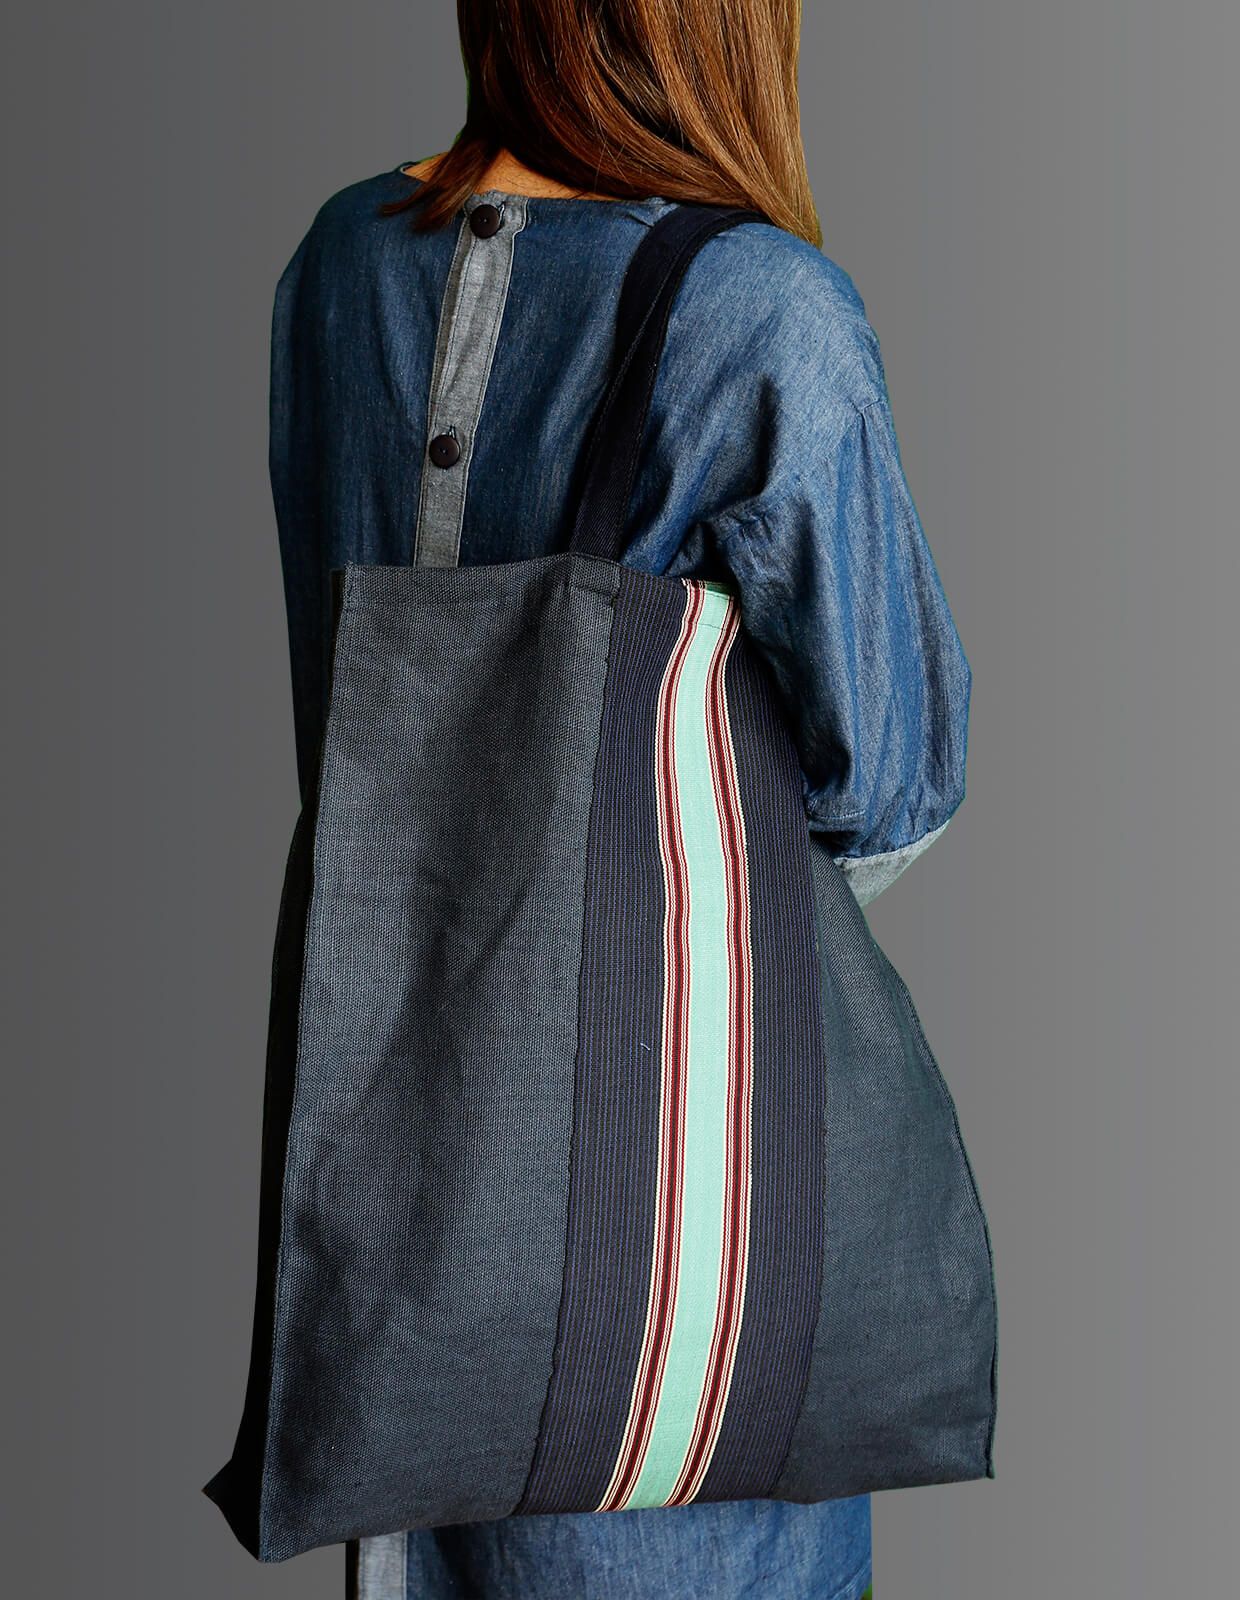 The Maker's Atelier Keira Fogden Dress